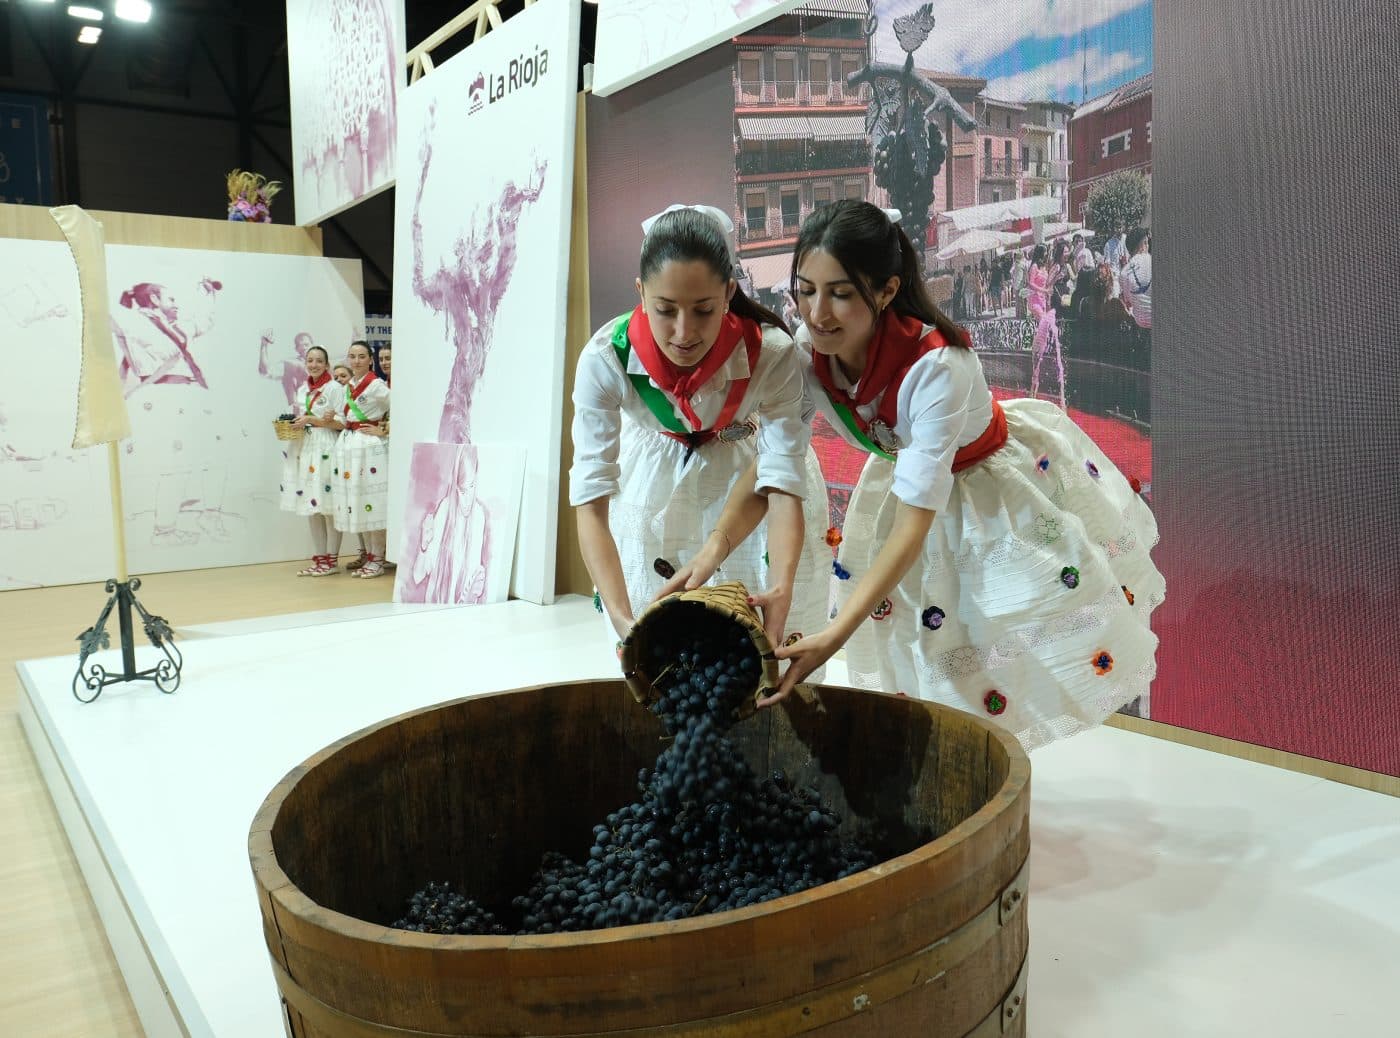 La Rioja exhibe en Fitur su patrimonio, tradiciones y productos alimentarios 21